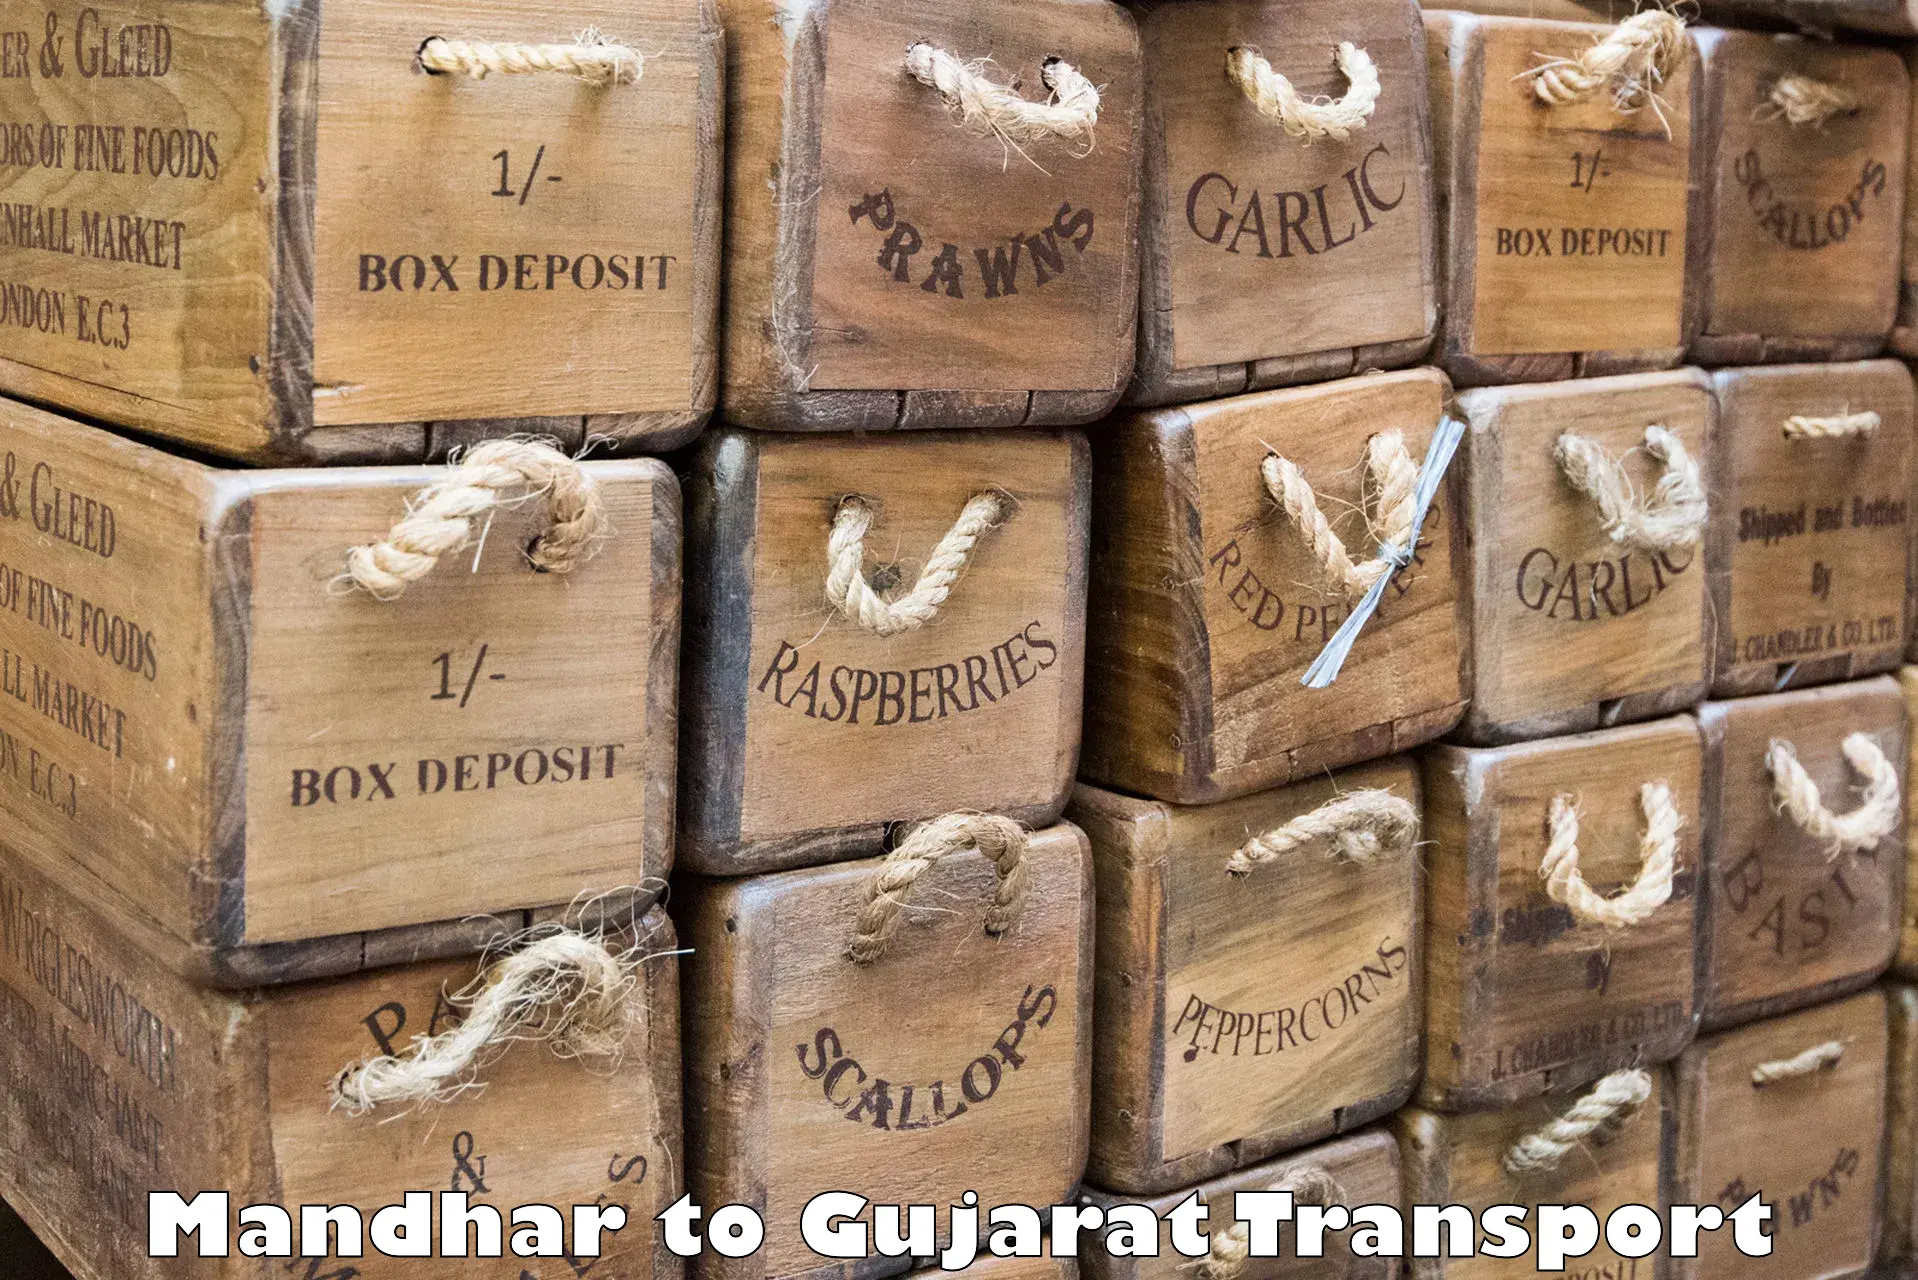 Cycle transportation service Mandhar to Gujarat